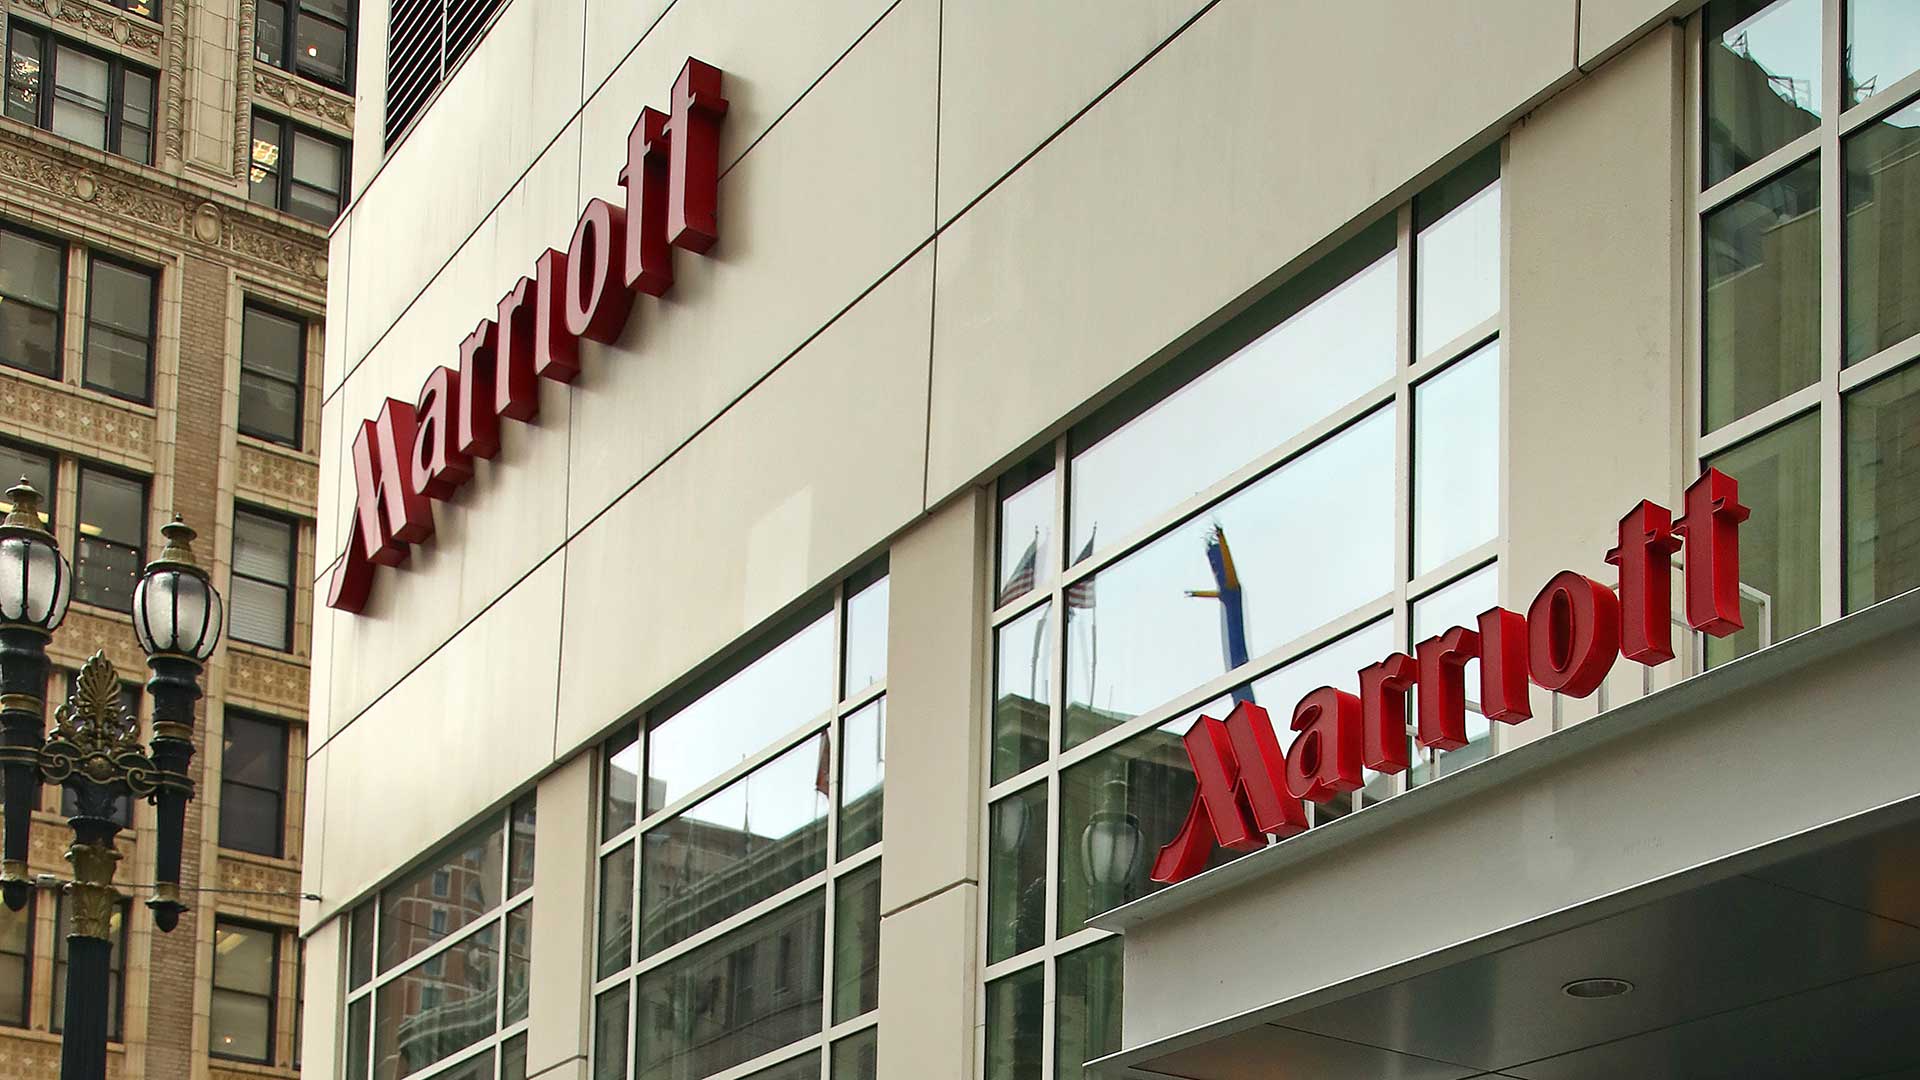 Hoteles Marriott anuncia un hackeo que podría afectar hasta a 500 millones de clientes